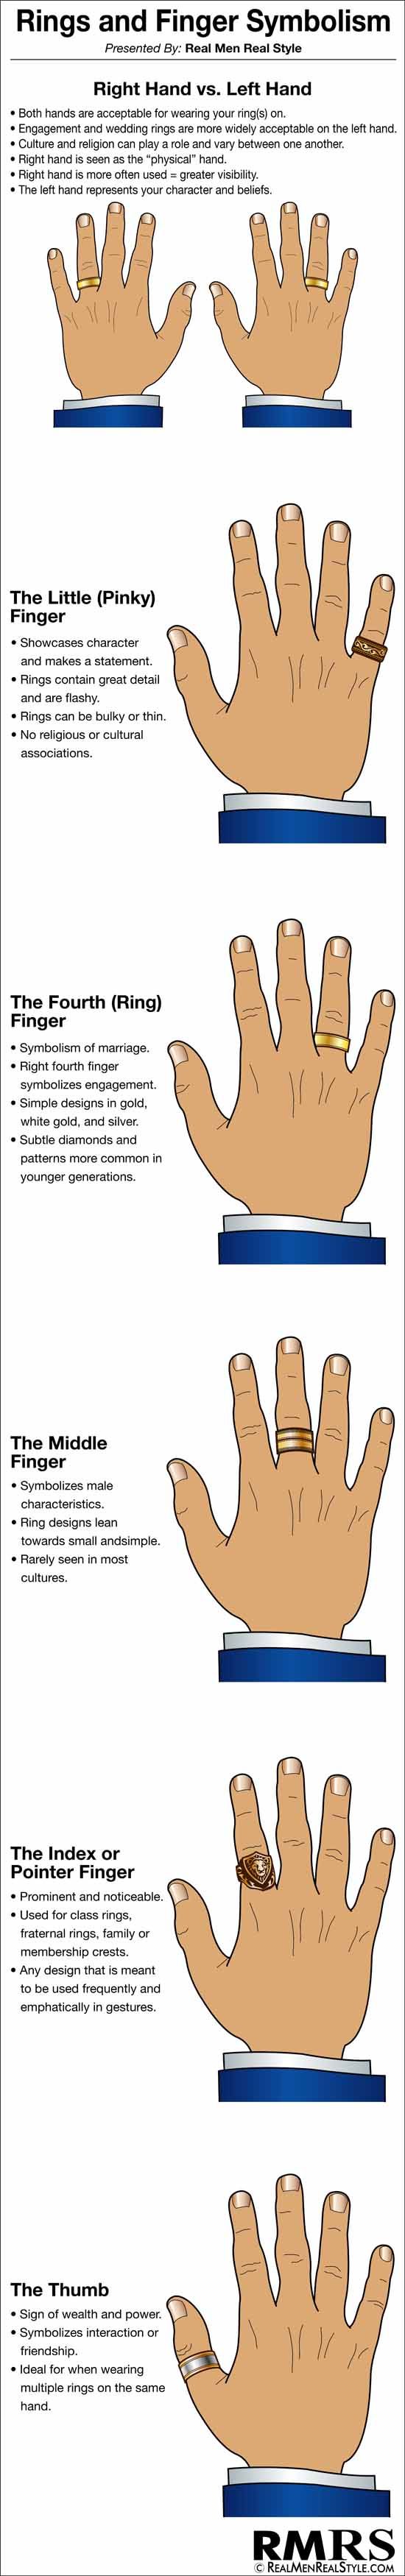 טבעת אצבע וסמליות אינפוגרפיקה | מדריך הגבר לטבעות ותכשיטי יד